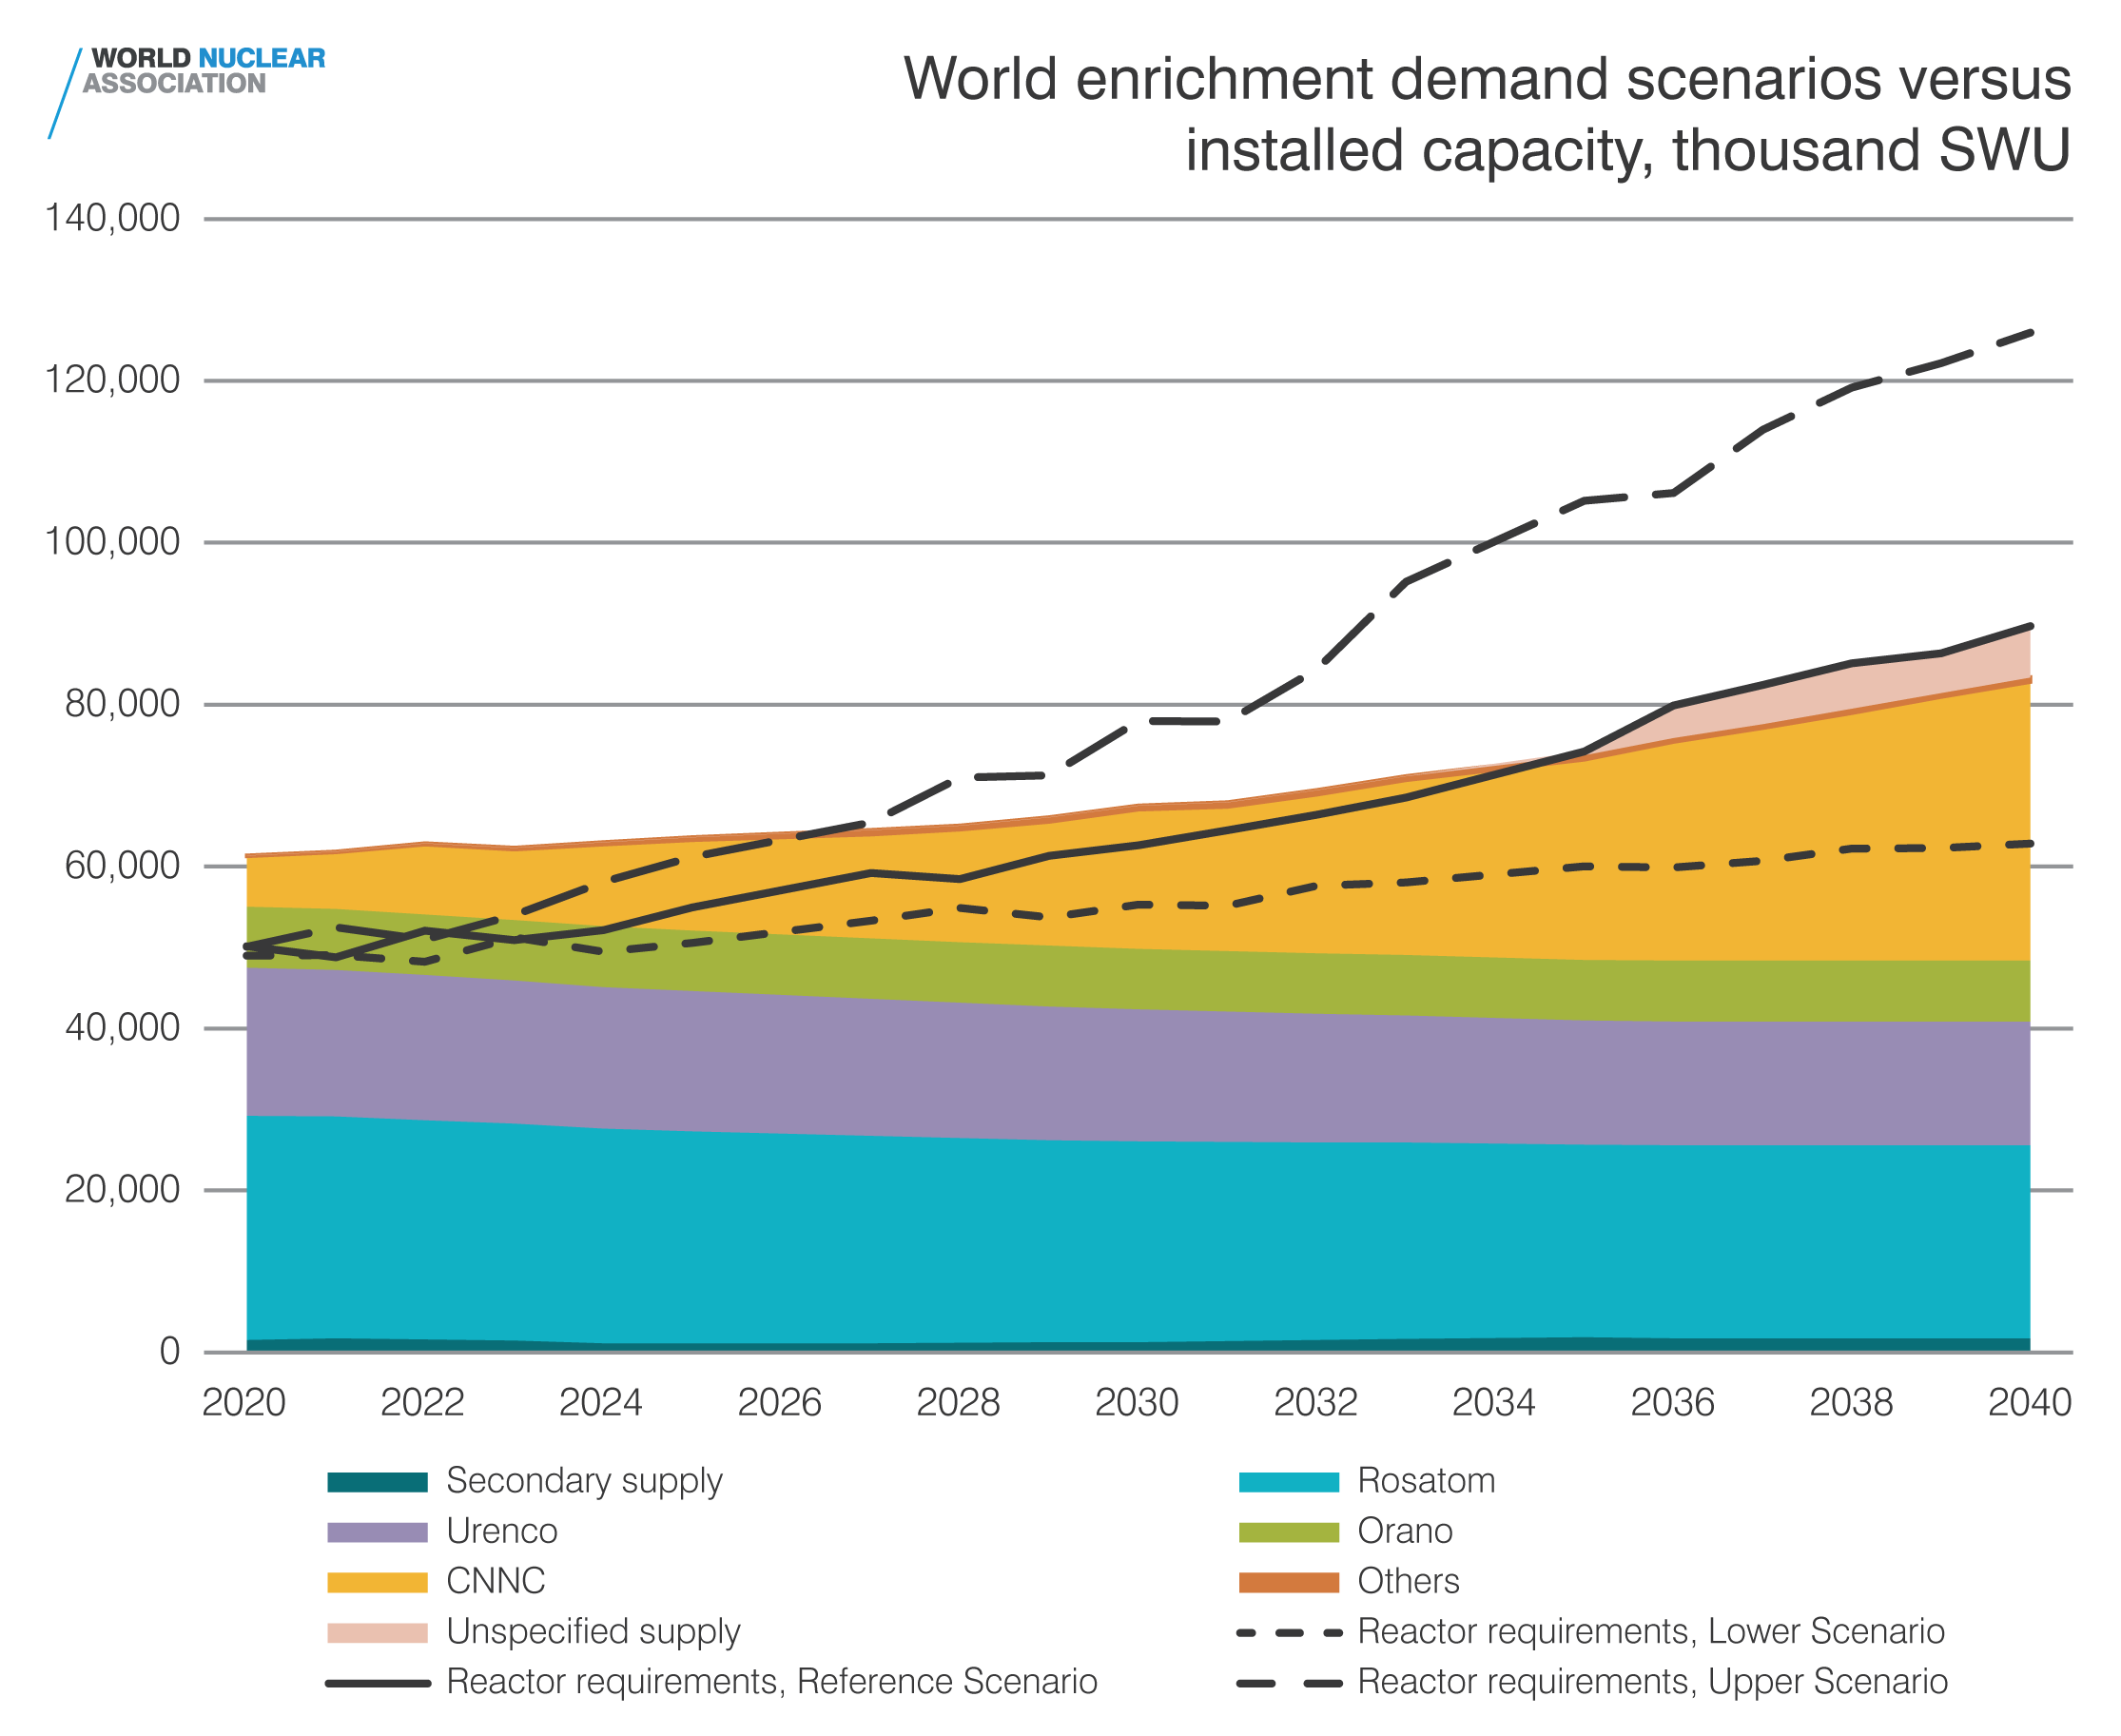 World enrichment demand versus installed capacity